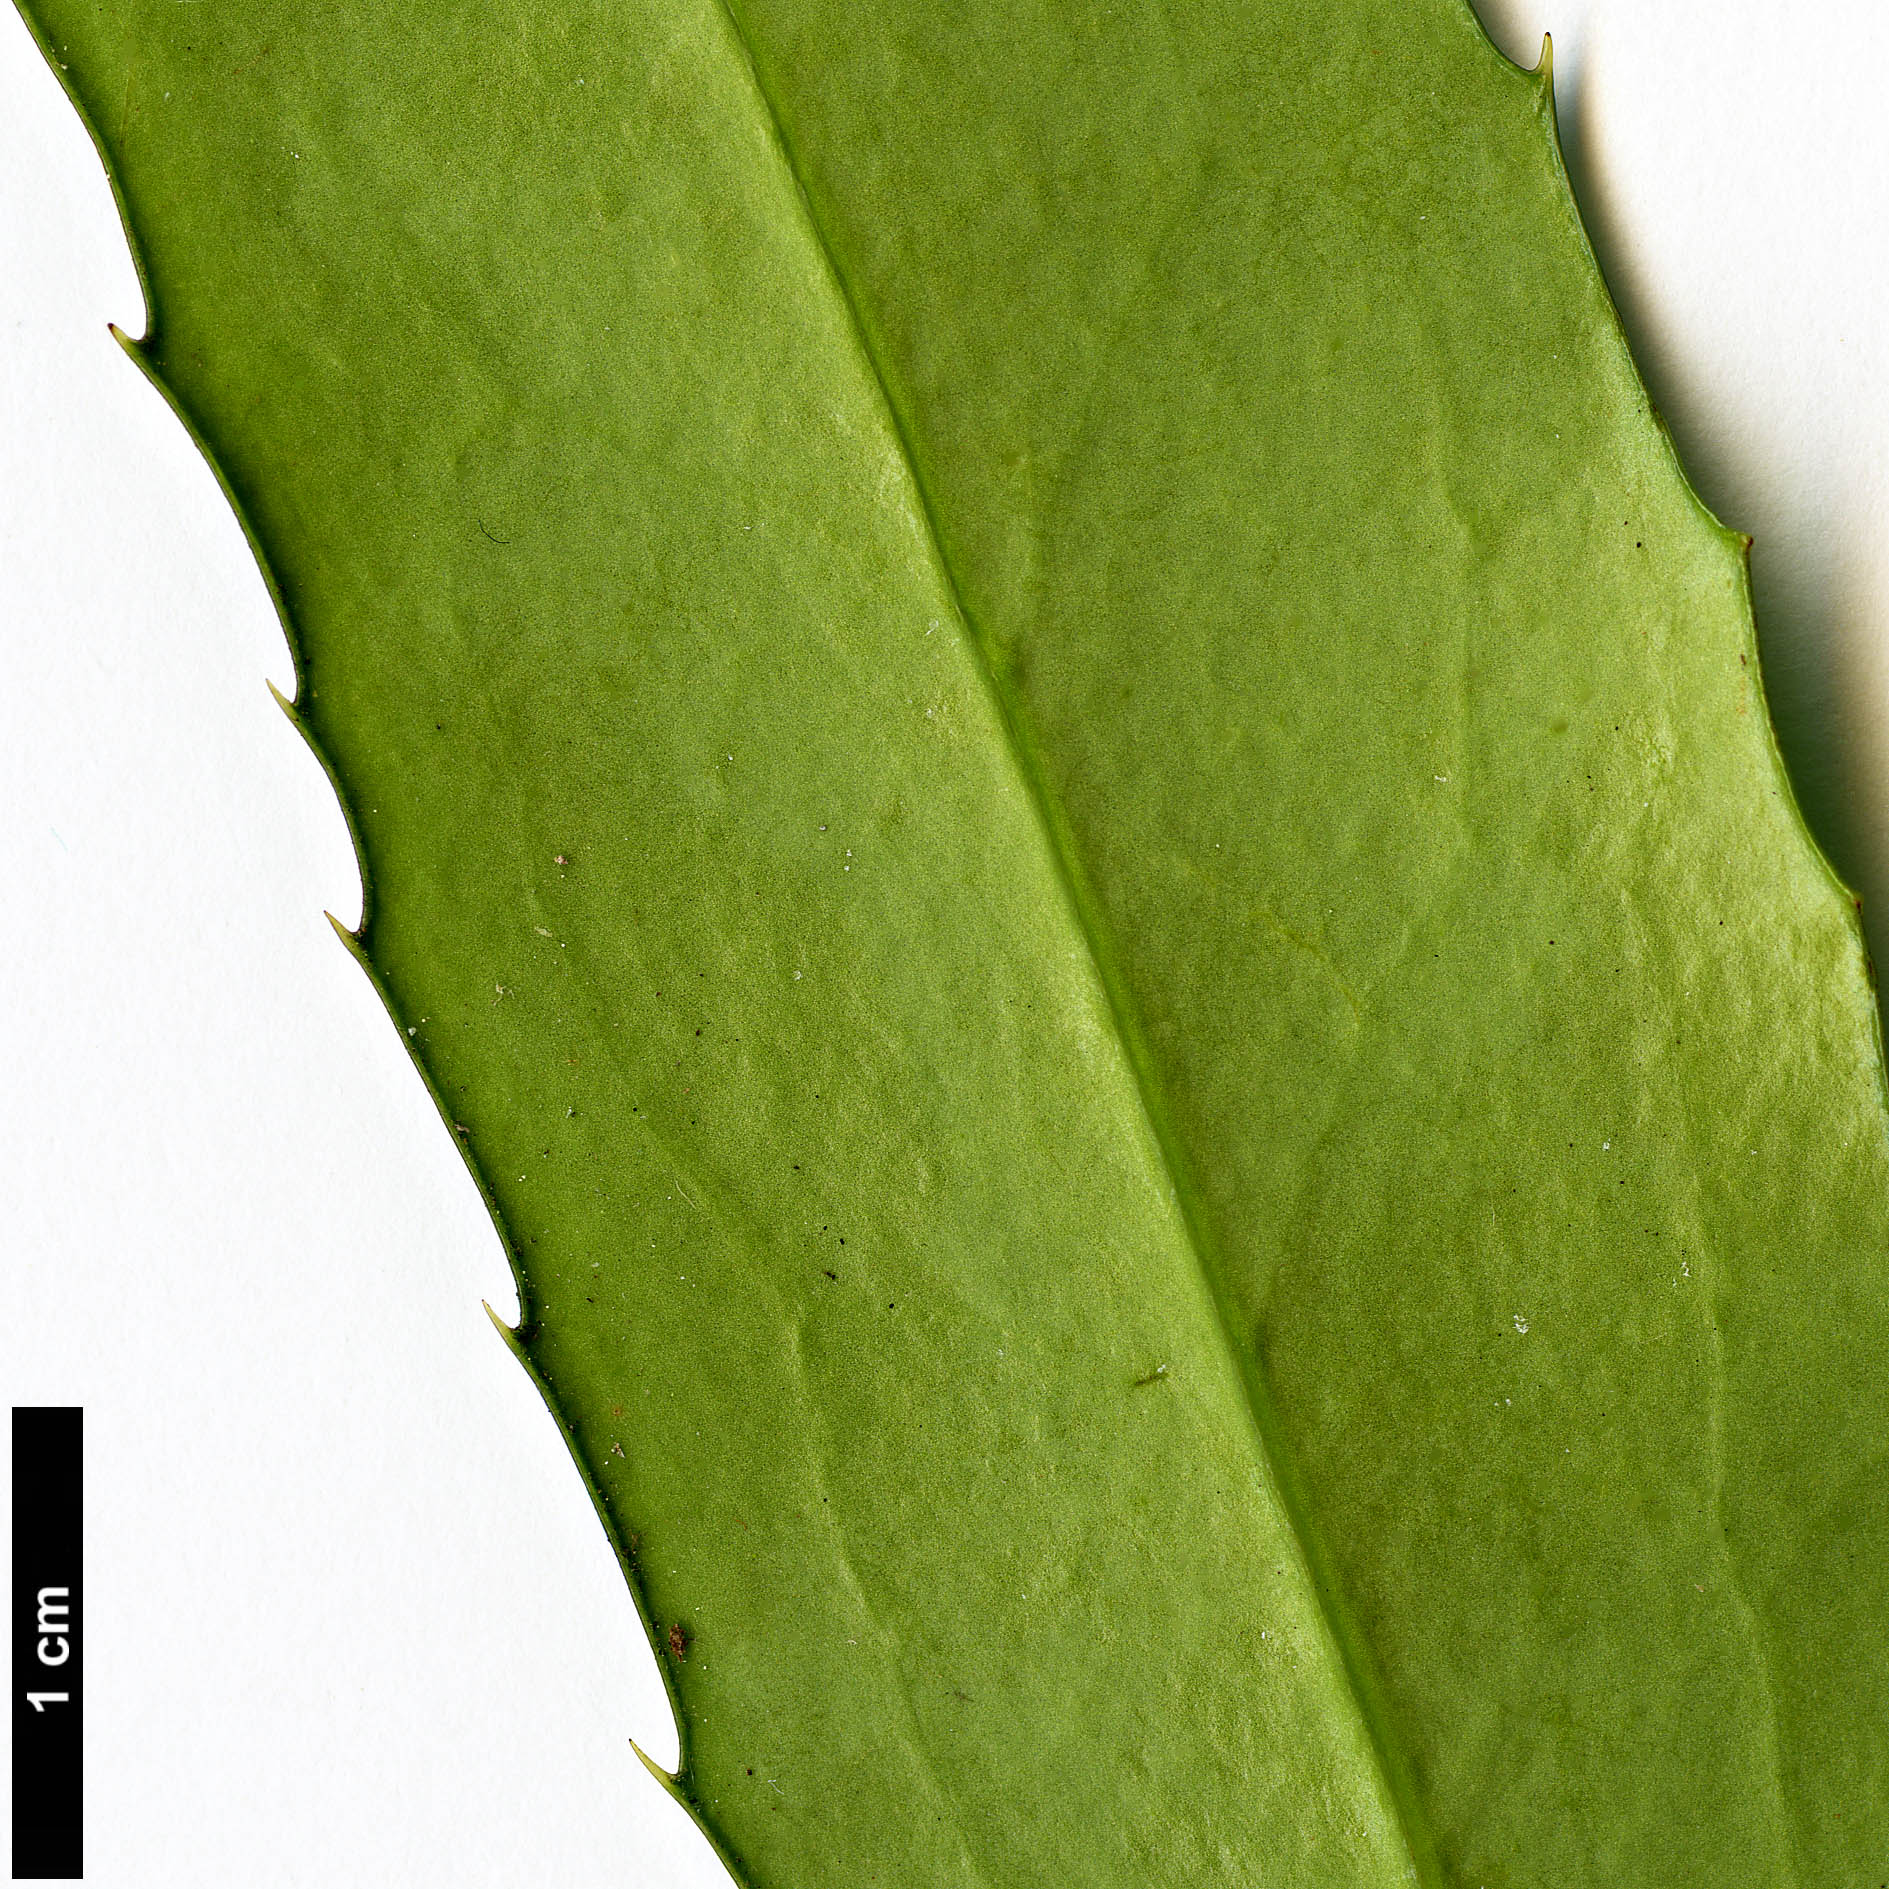 High resolution image: Family: Berberidaceae - Genus: Mahonia - Taxon: eurybracteata